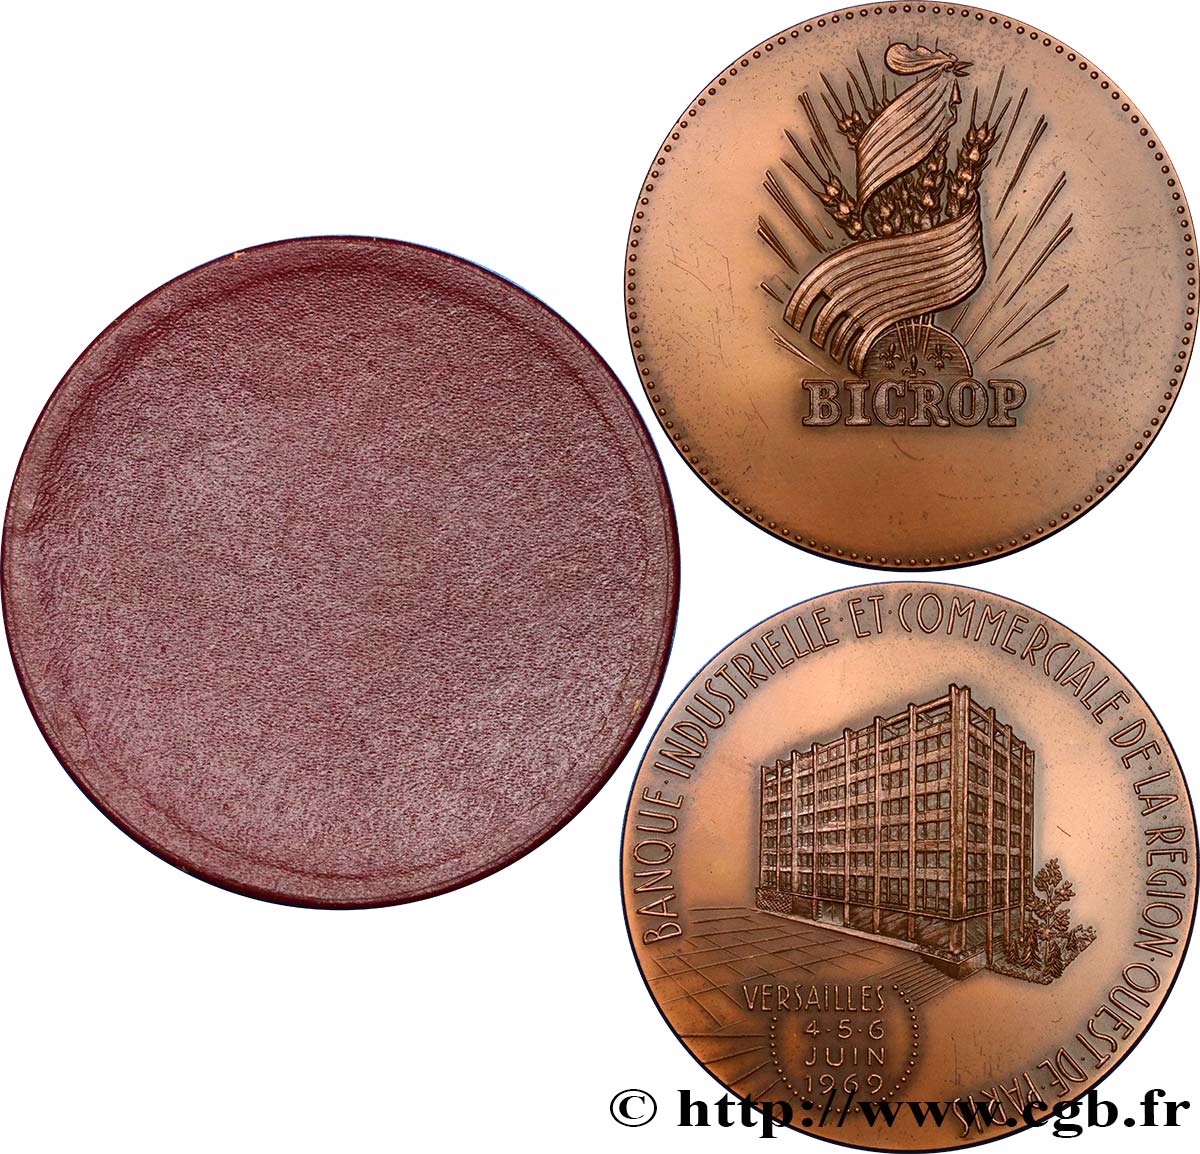 BANKS - CRÉDIT INSTITUTIONS Médaille, Banque BICROP AU